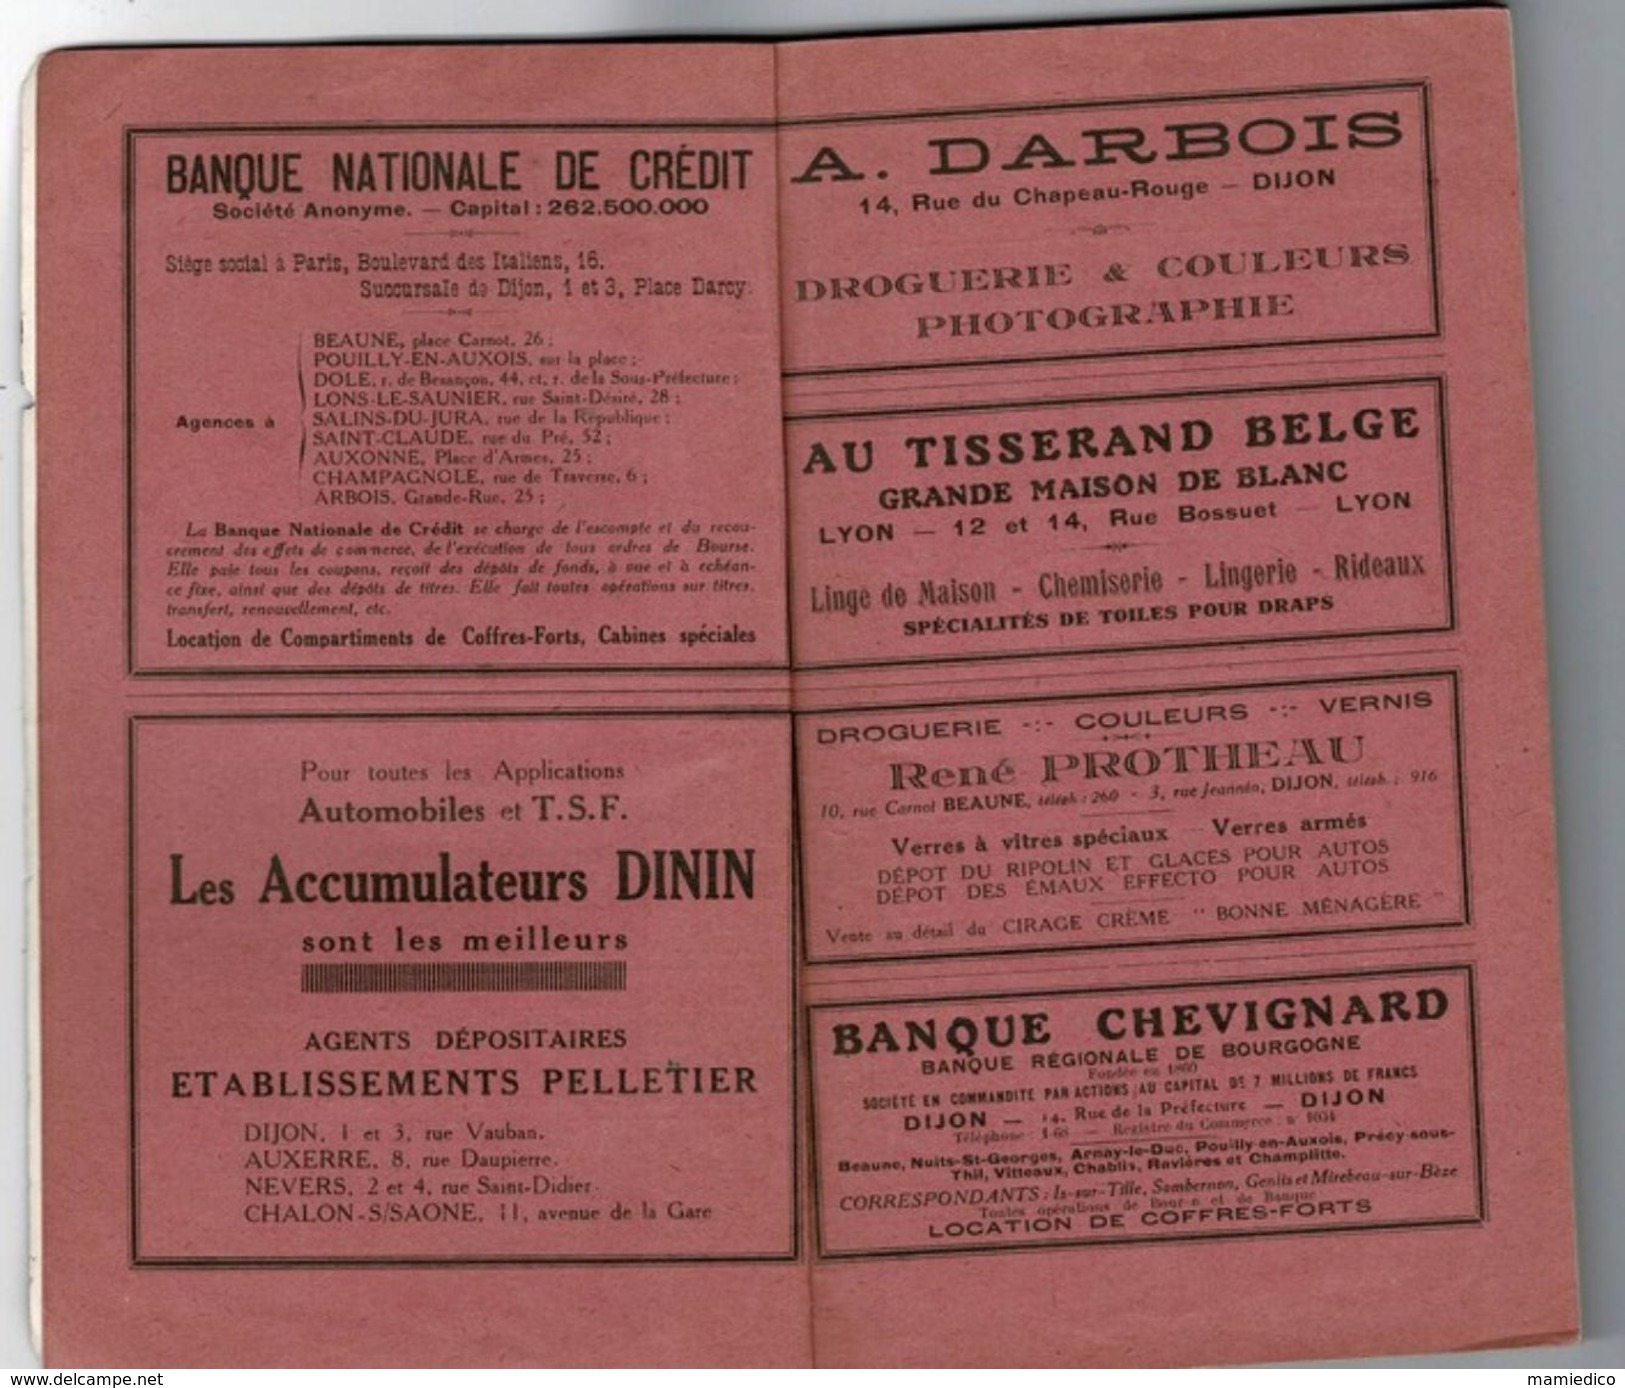 1929 Bourgogne, Morvan, Plateau De Langres Edité Par La Fédération Des Syndicats D'Initiative: Les ESSI - Bourgogne